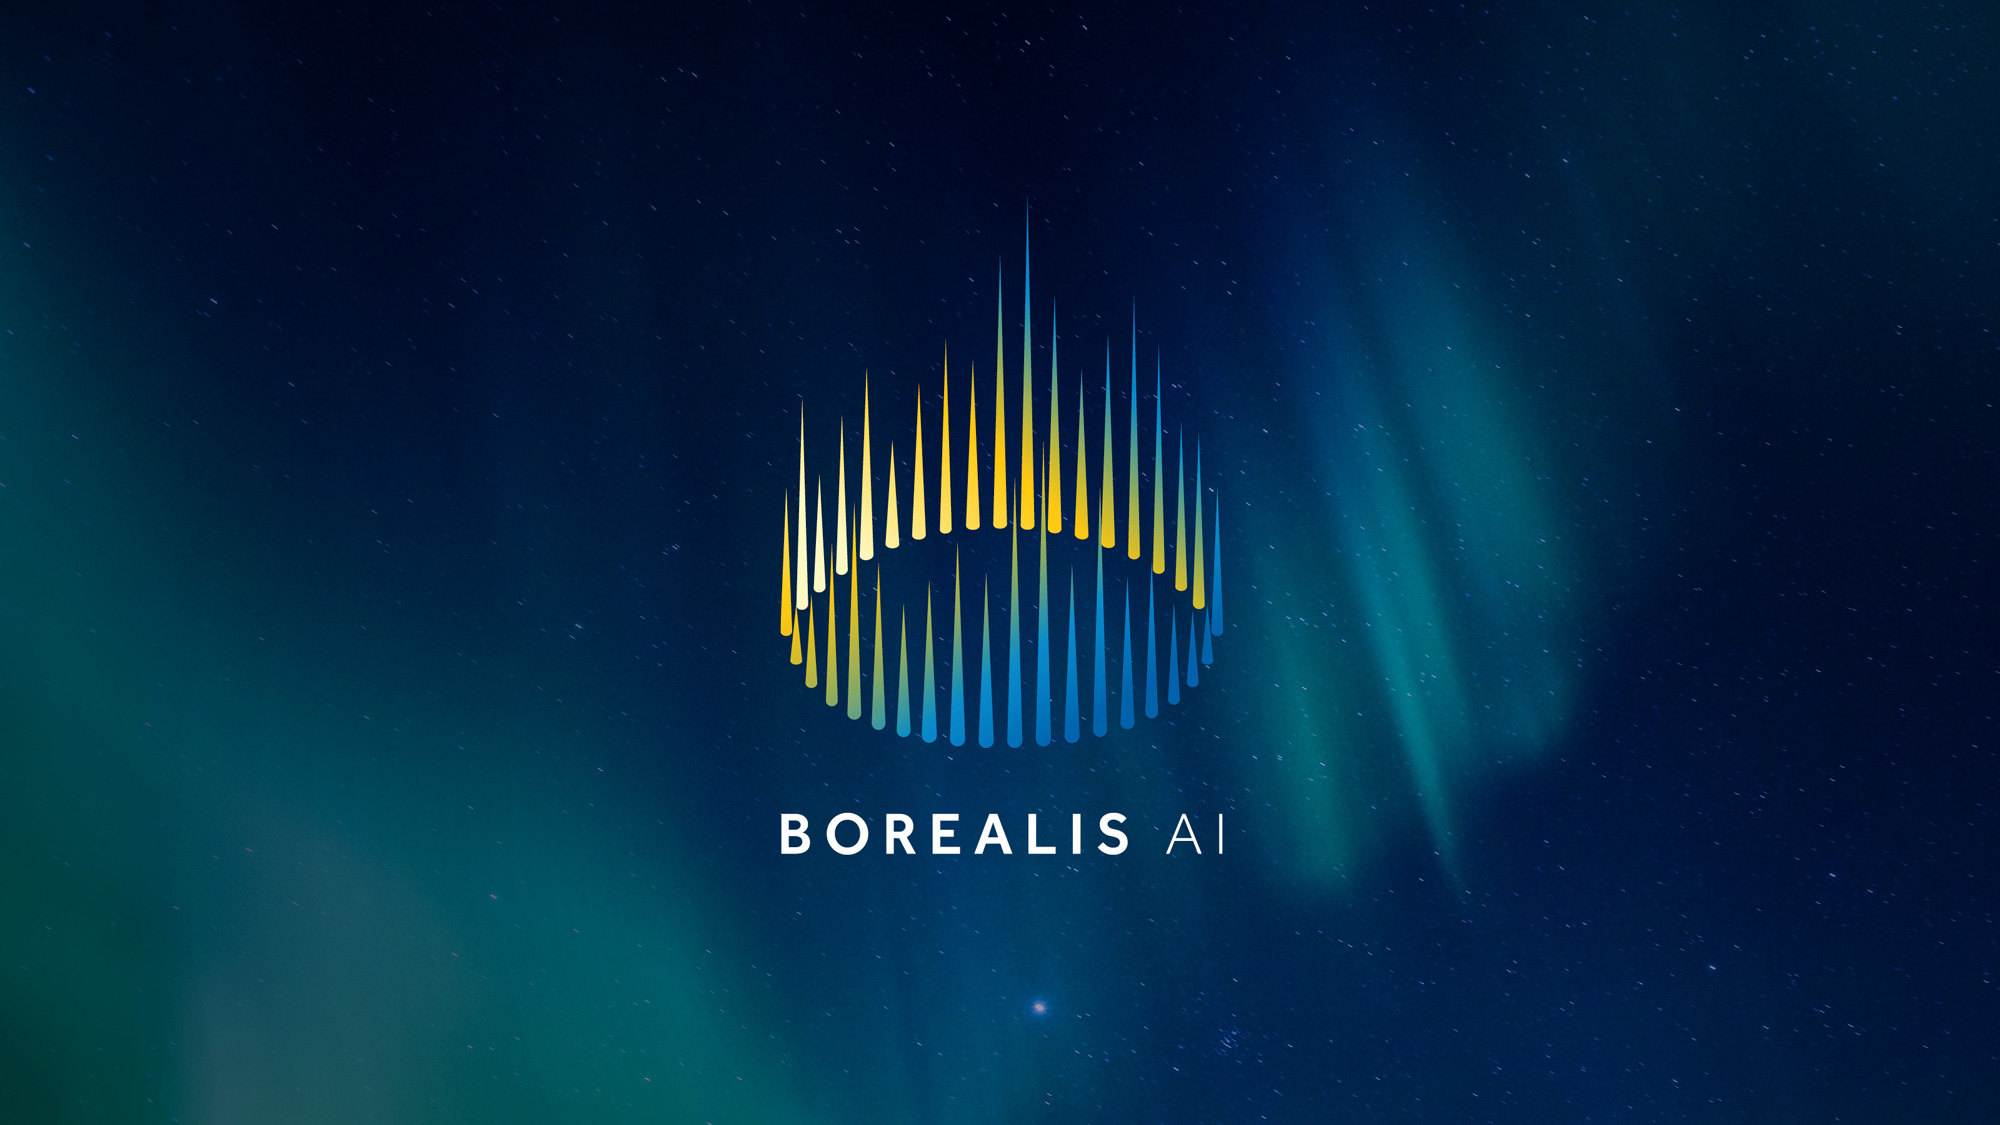 Borealis AI logo on an aurora night background.